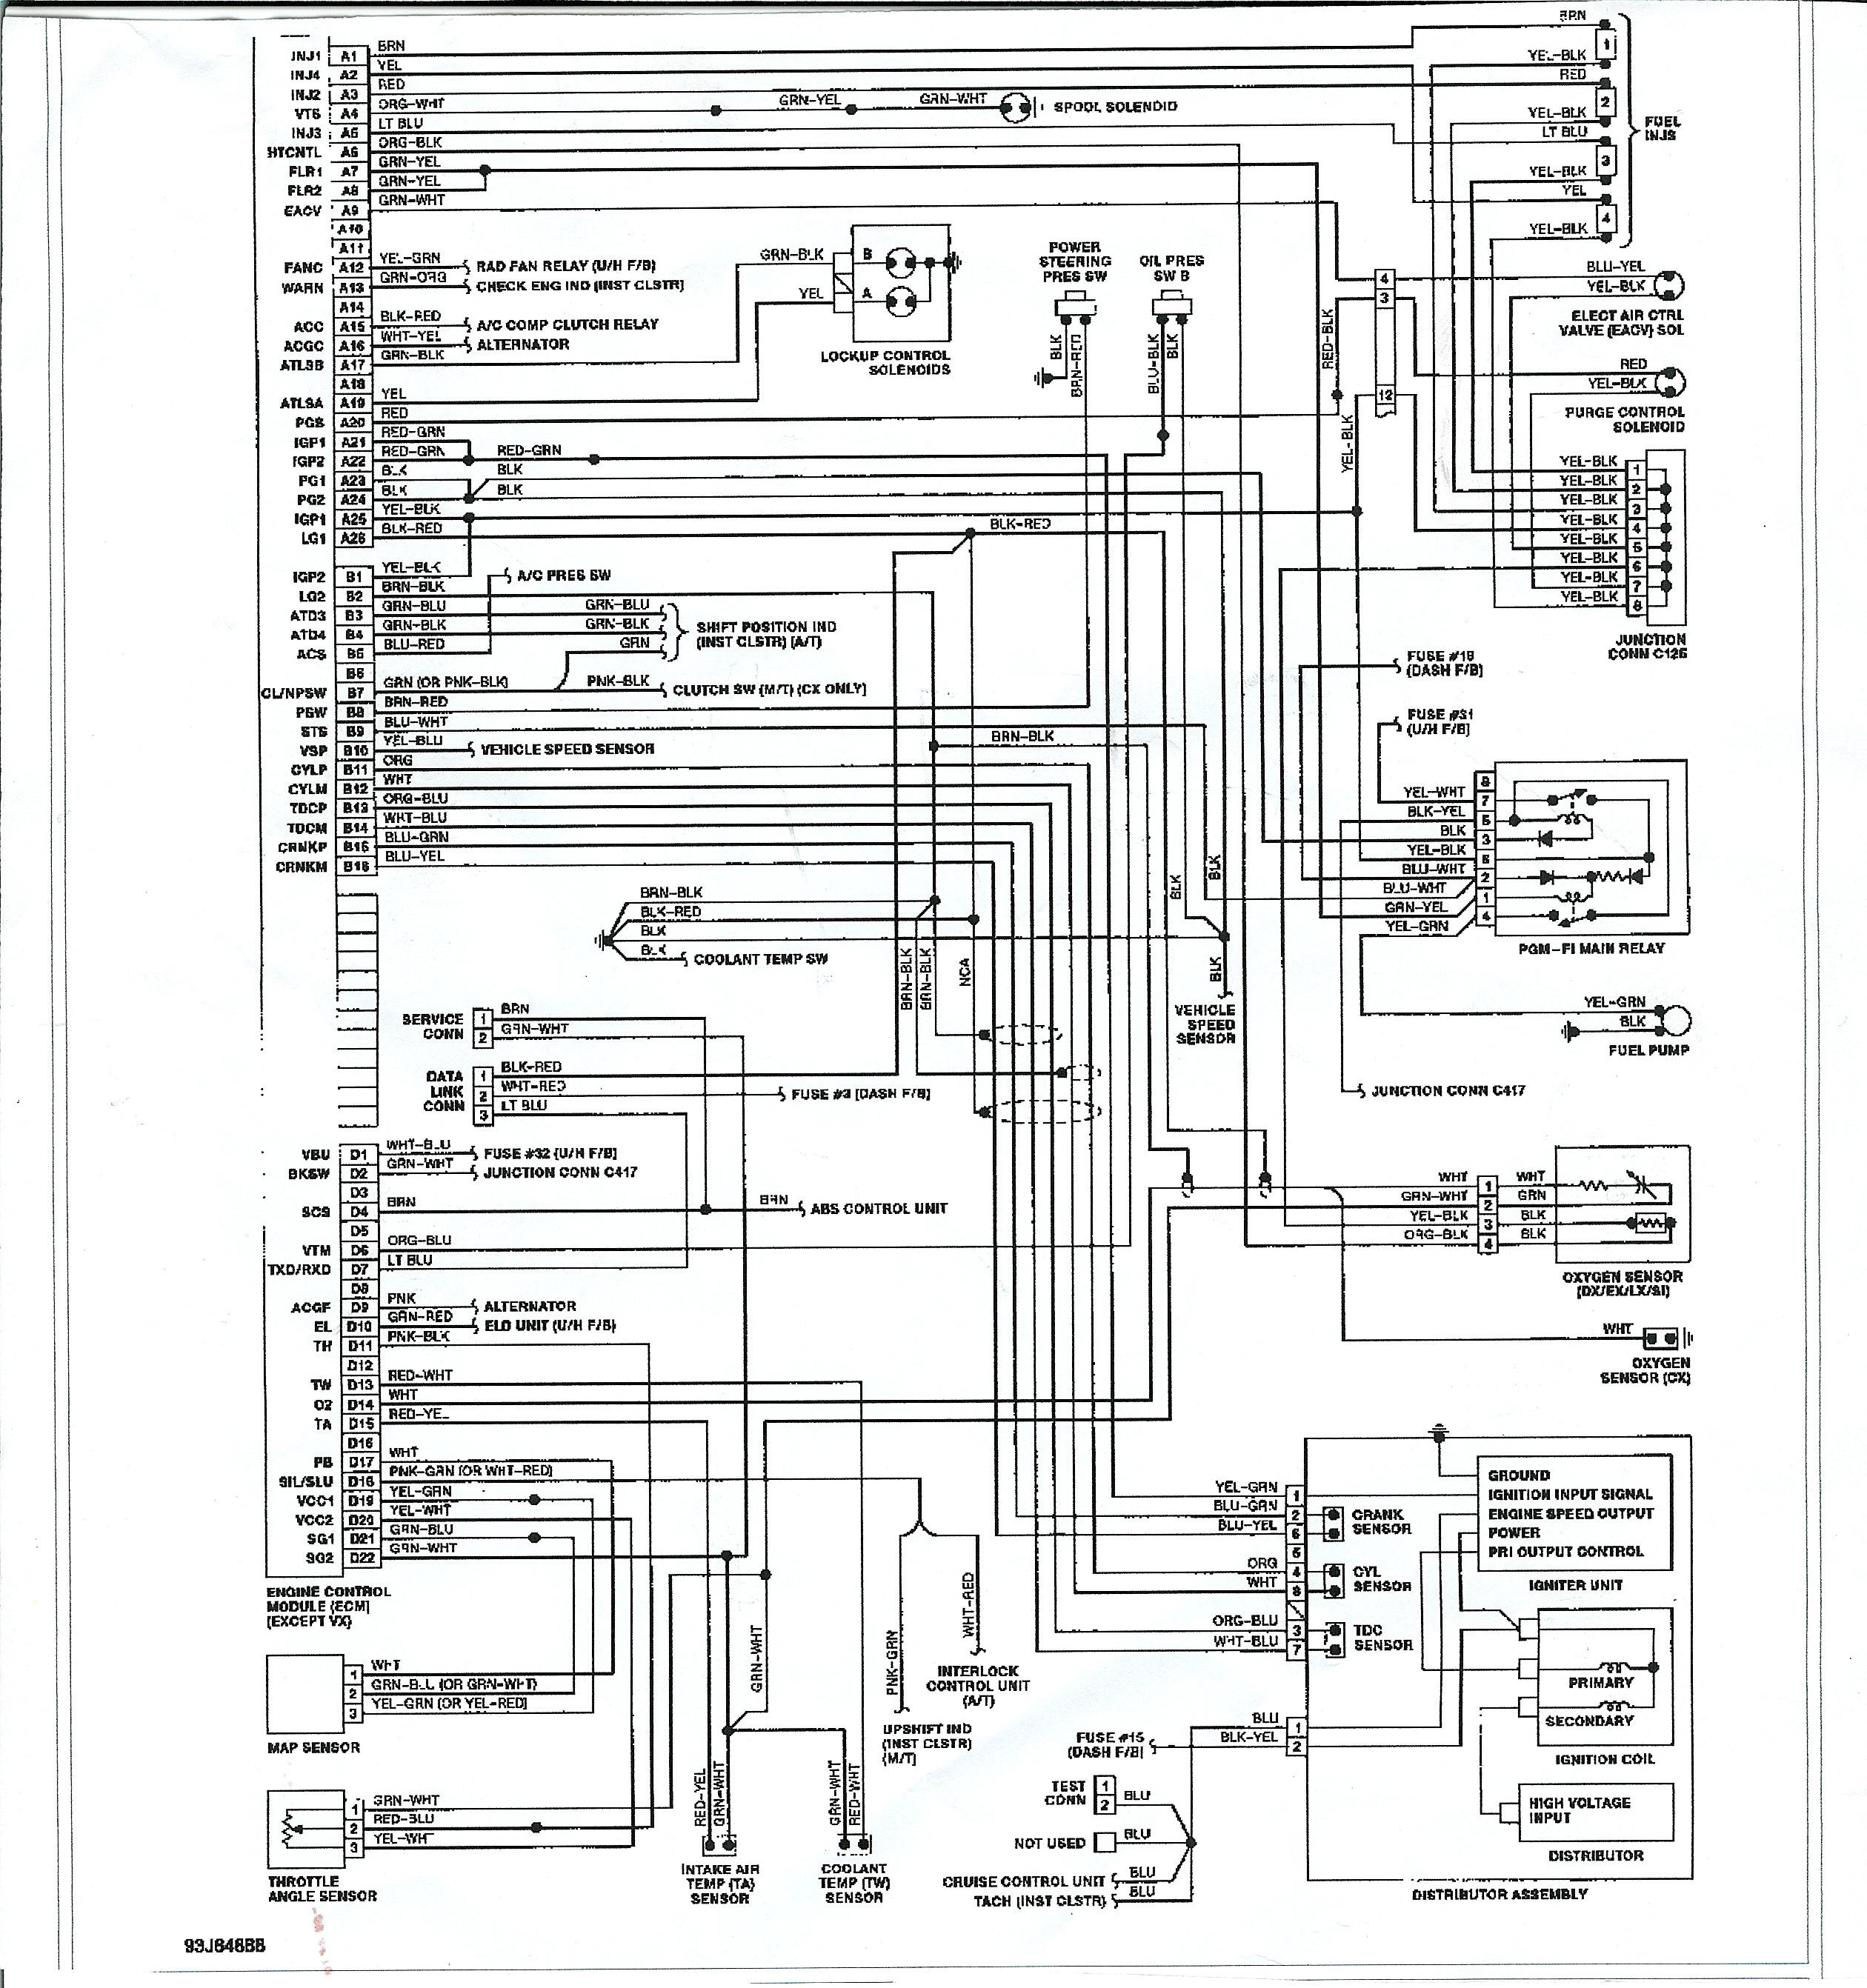 Honda Civic Wiring Diagram from detoxicrecenze.com